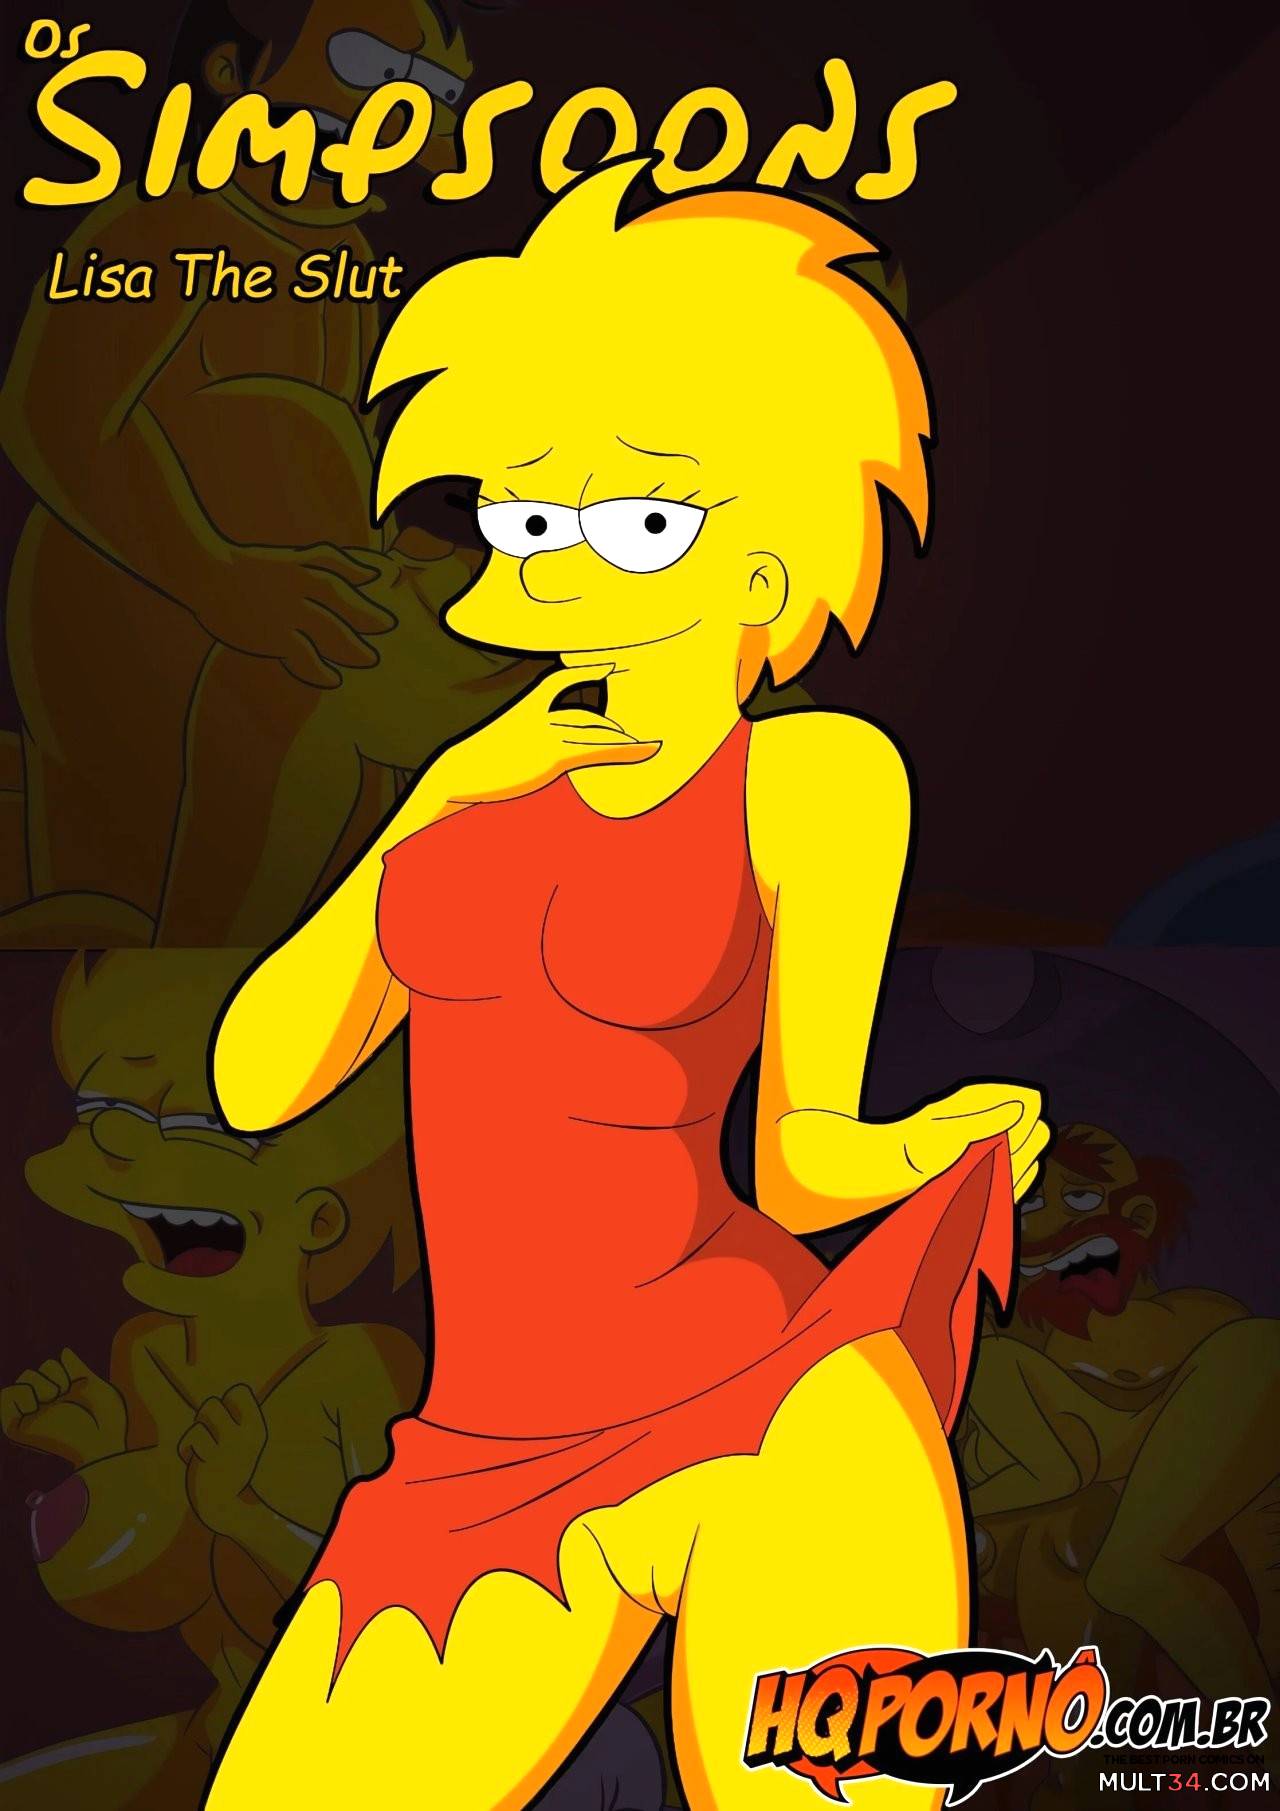 Cartoon Simpson Porn Toons - OS Simpsons 3- Lisa The Slut porn comic - the best cartoon porn comics,  Rule 34 | MULT34